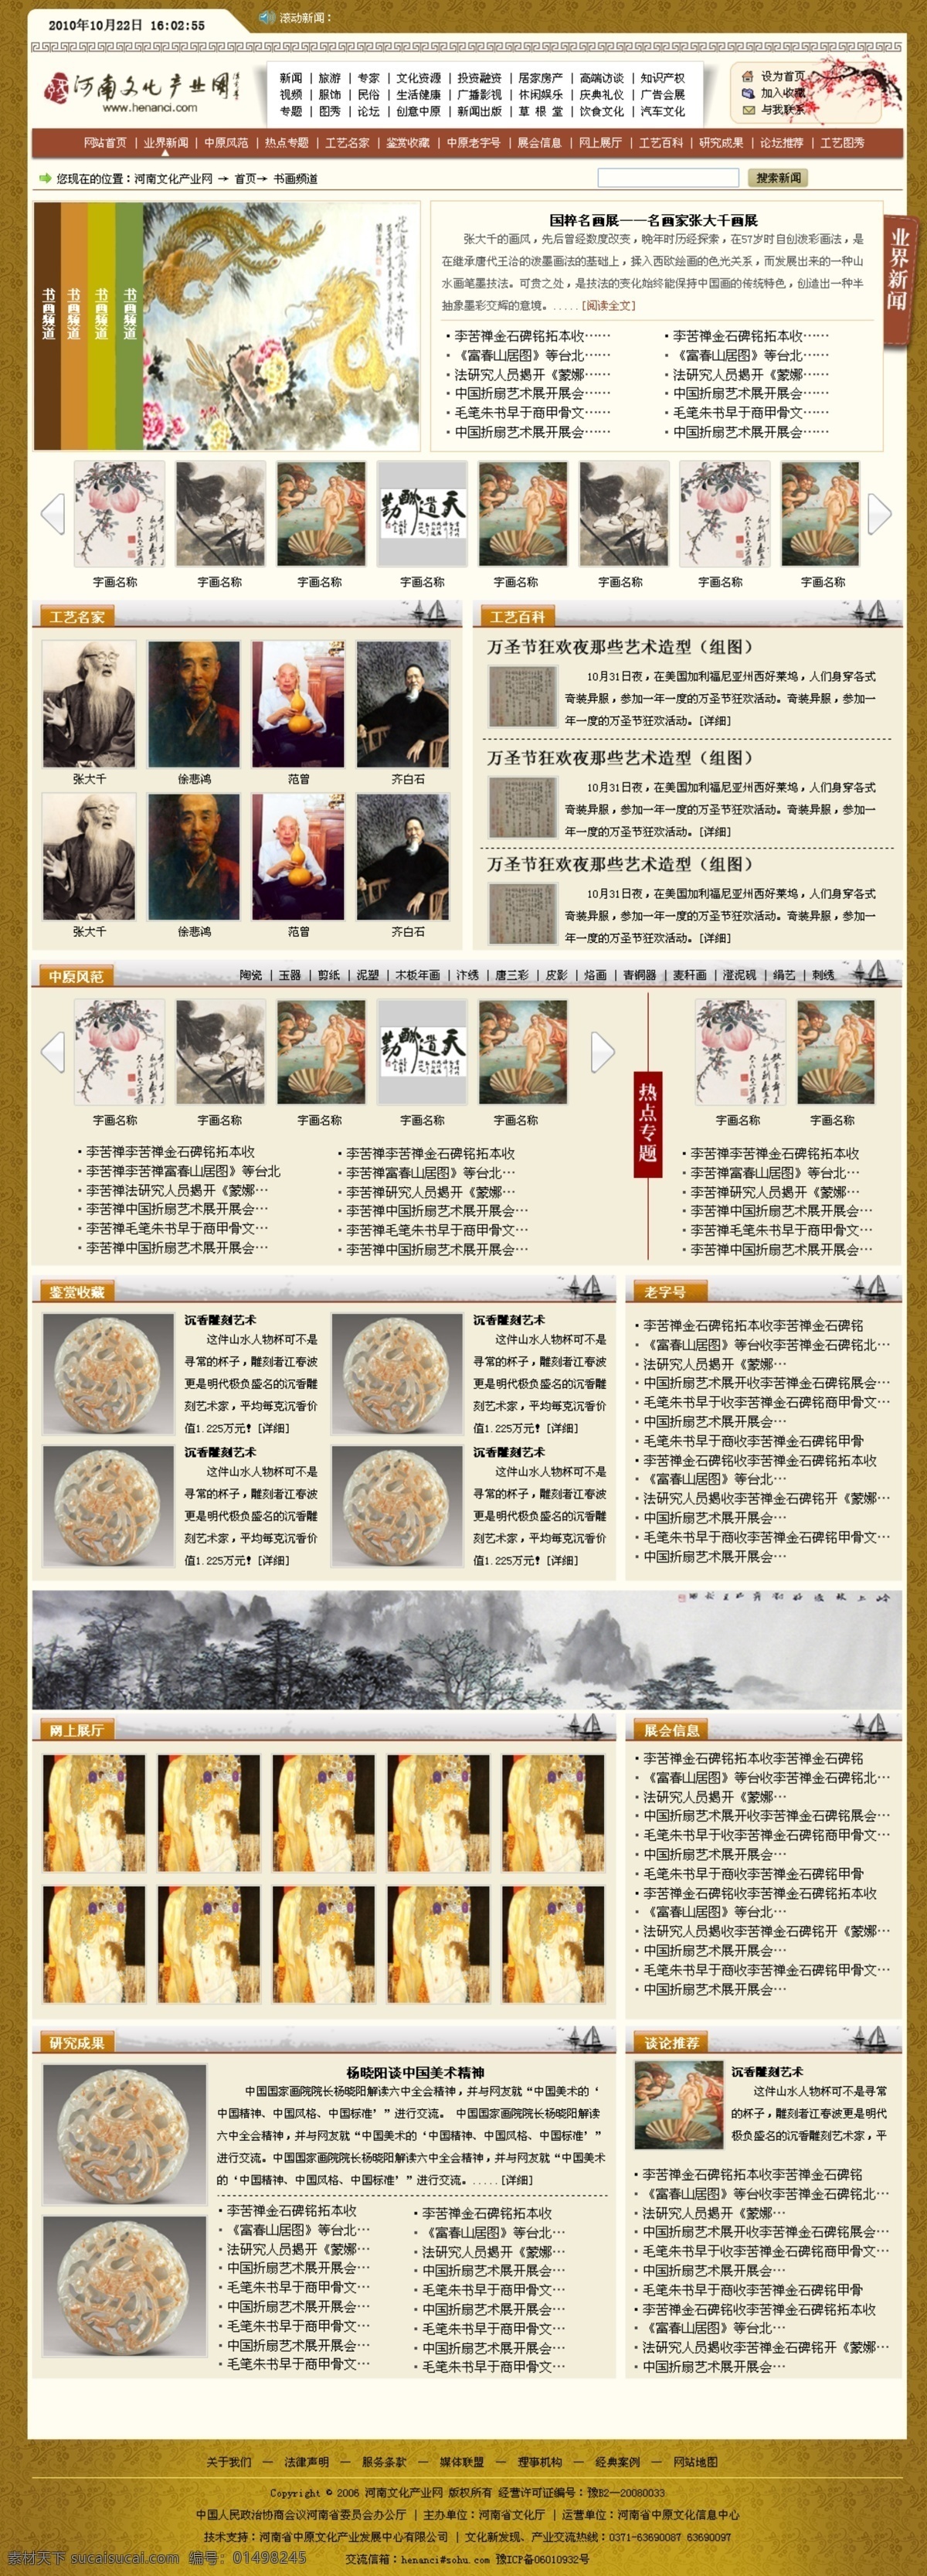 古典 网页模板 古典网页模板 门户网站模板 源文件 中国风模板 中文模版